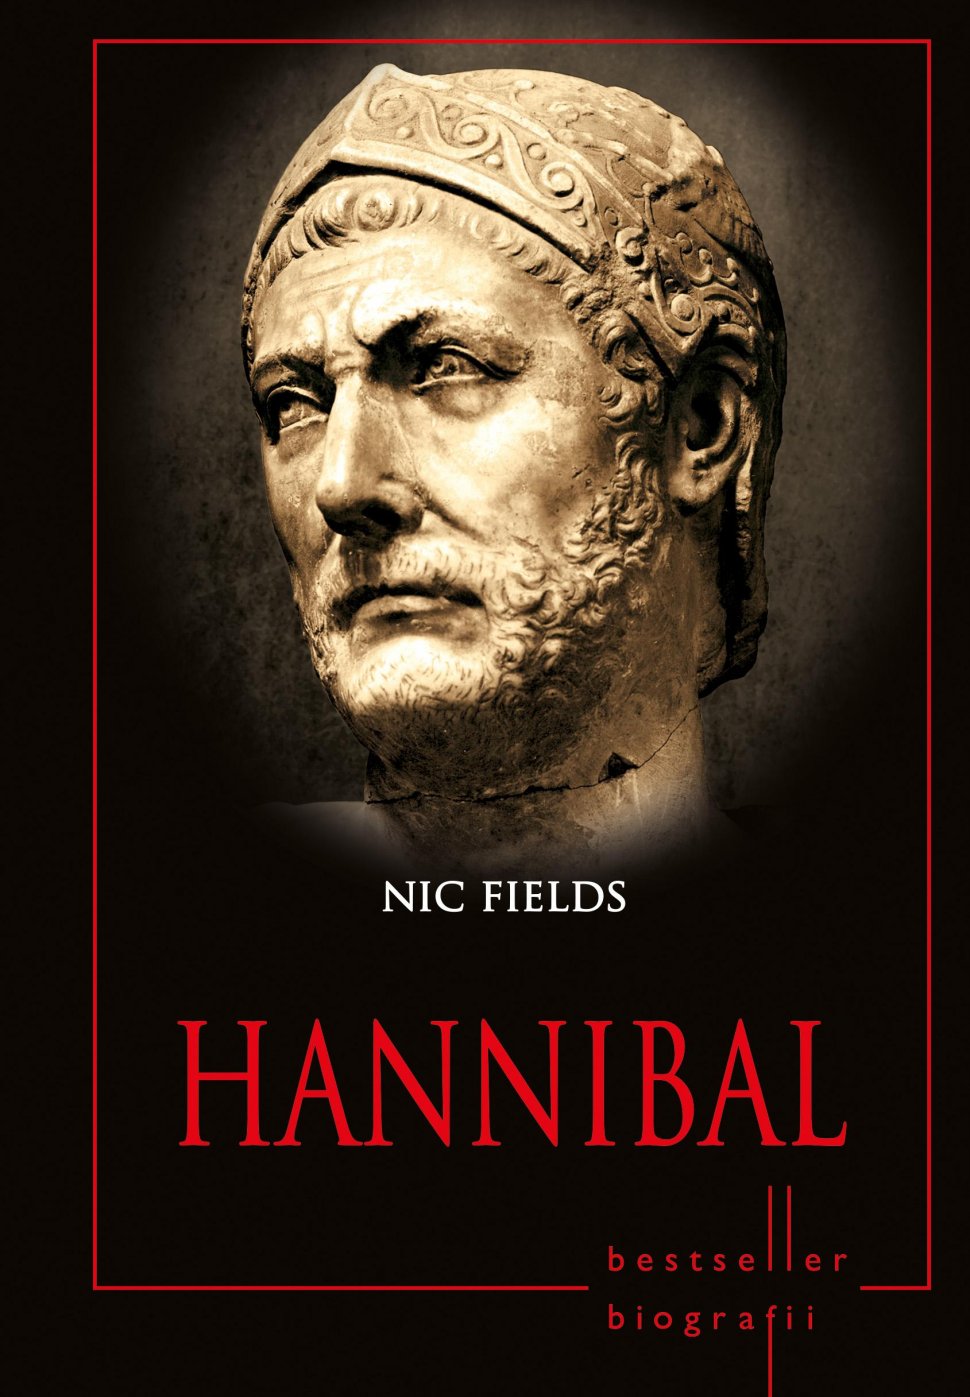 Hannibal, cel de-al patrulea volum al colecţiei Bestseller Biografii, apare luni cu Jurnalul Naţional